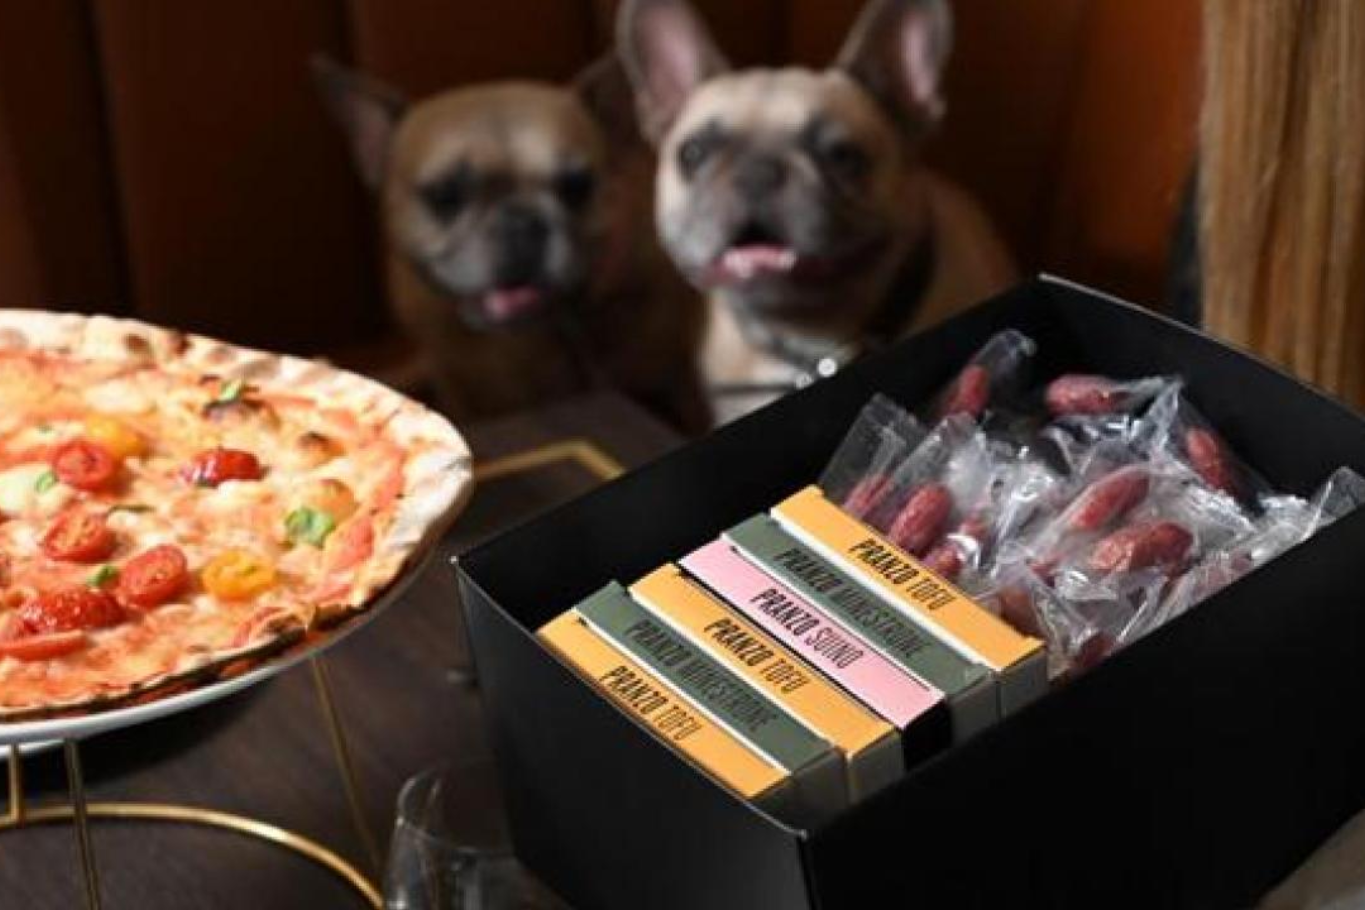 crazy-pizza:-menu-per-cani-gratis?-no,-incluso-nei-prezzi-lievitati